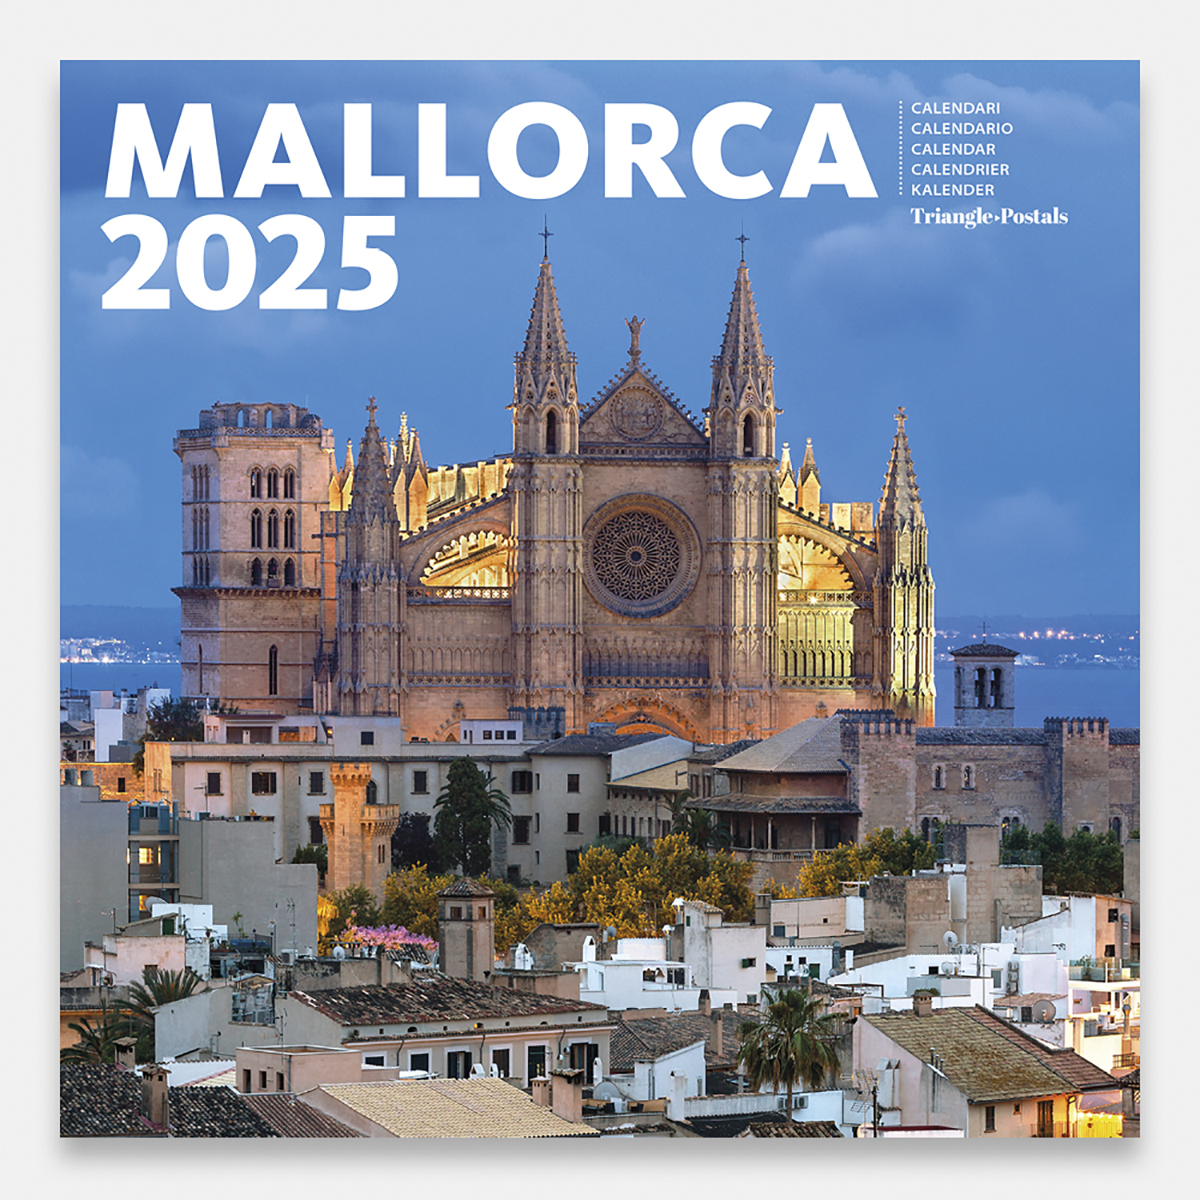 Calendrier 2025 Majorque 25mag2 calendario pared 2025 mallorca